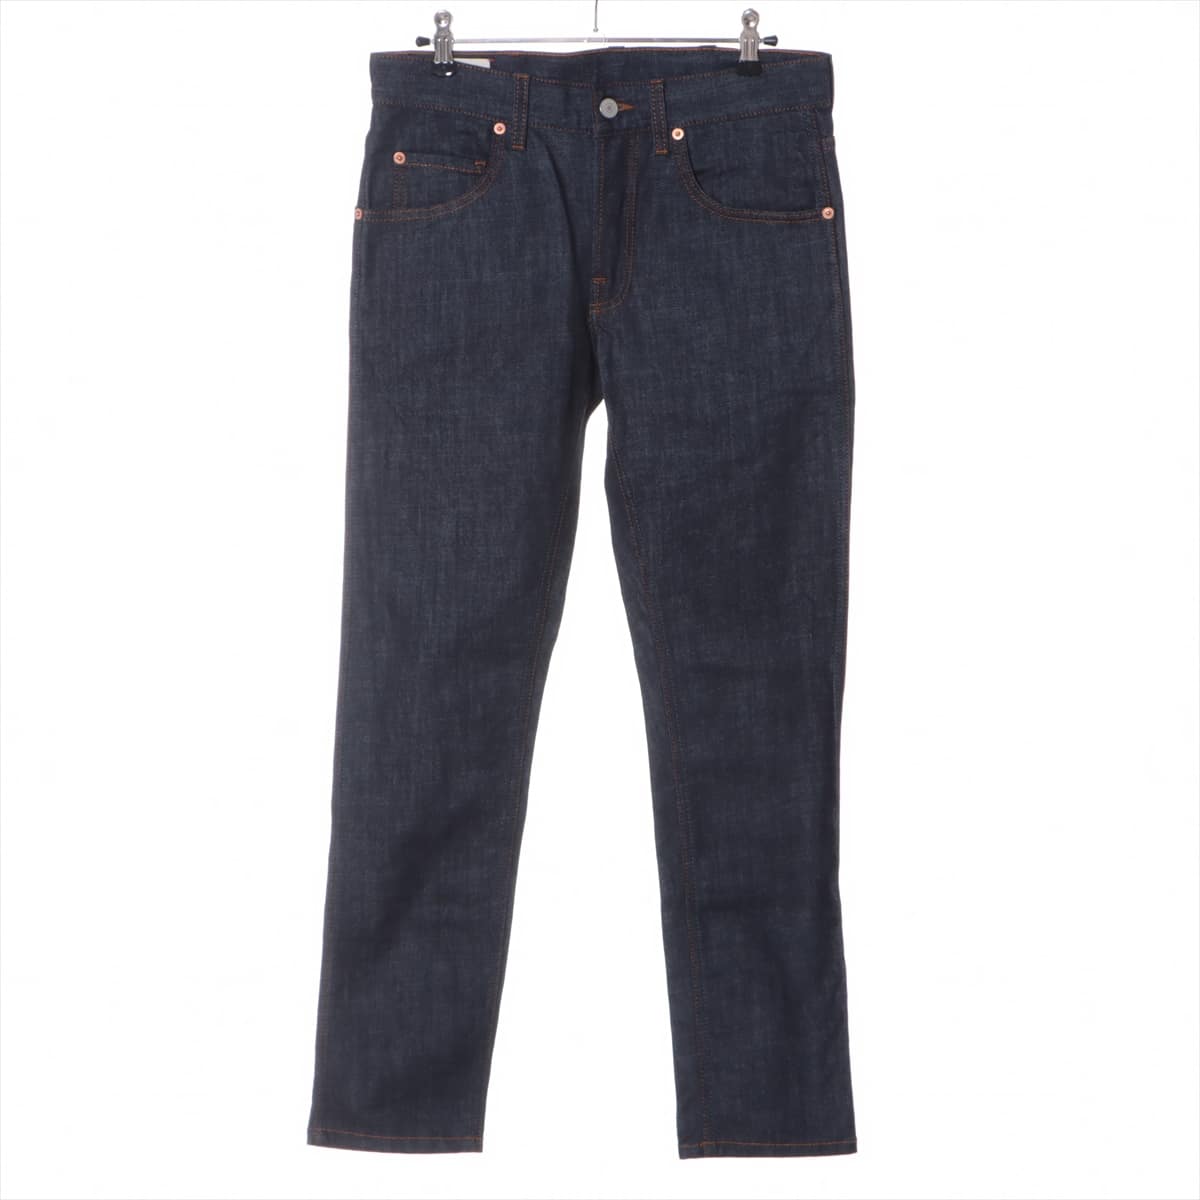 Gucci Cotton & Polyurethane Denim pants 28 Men's Navy blue  408637